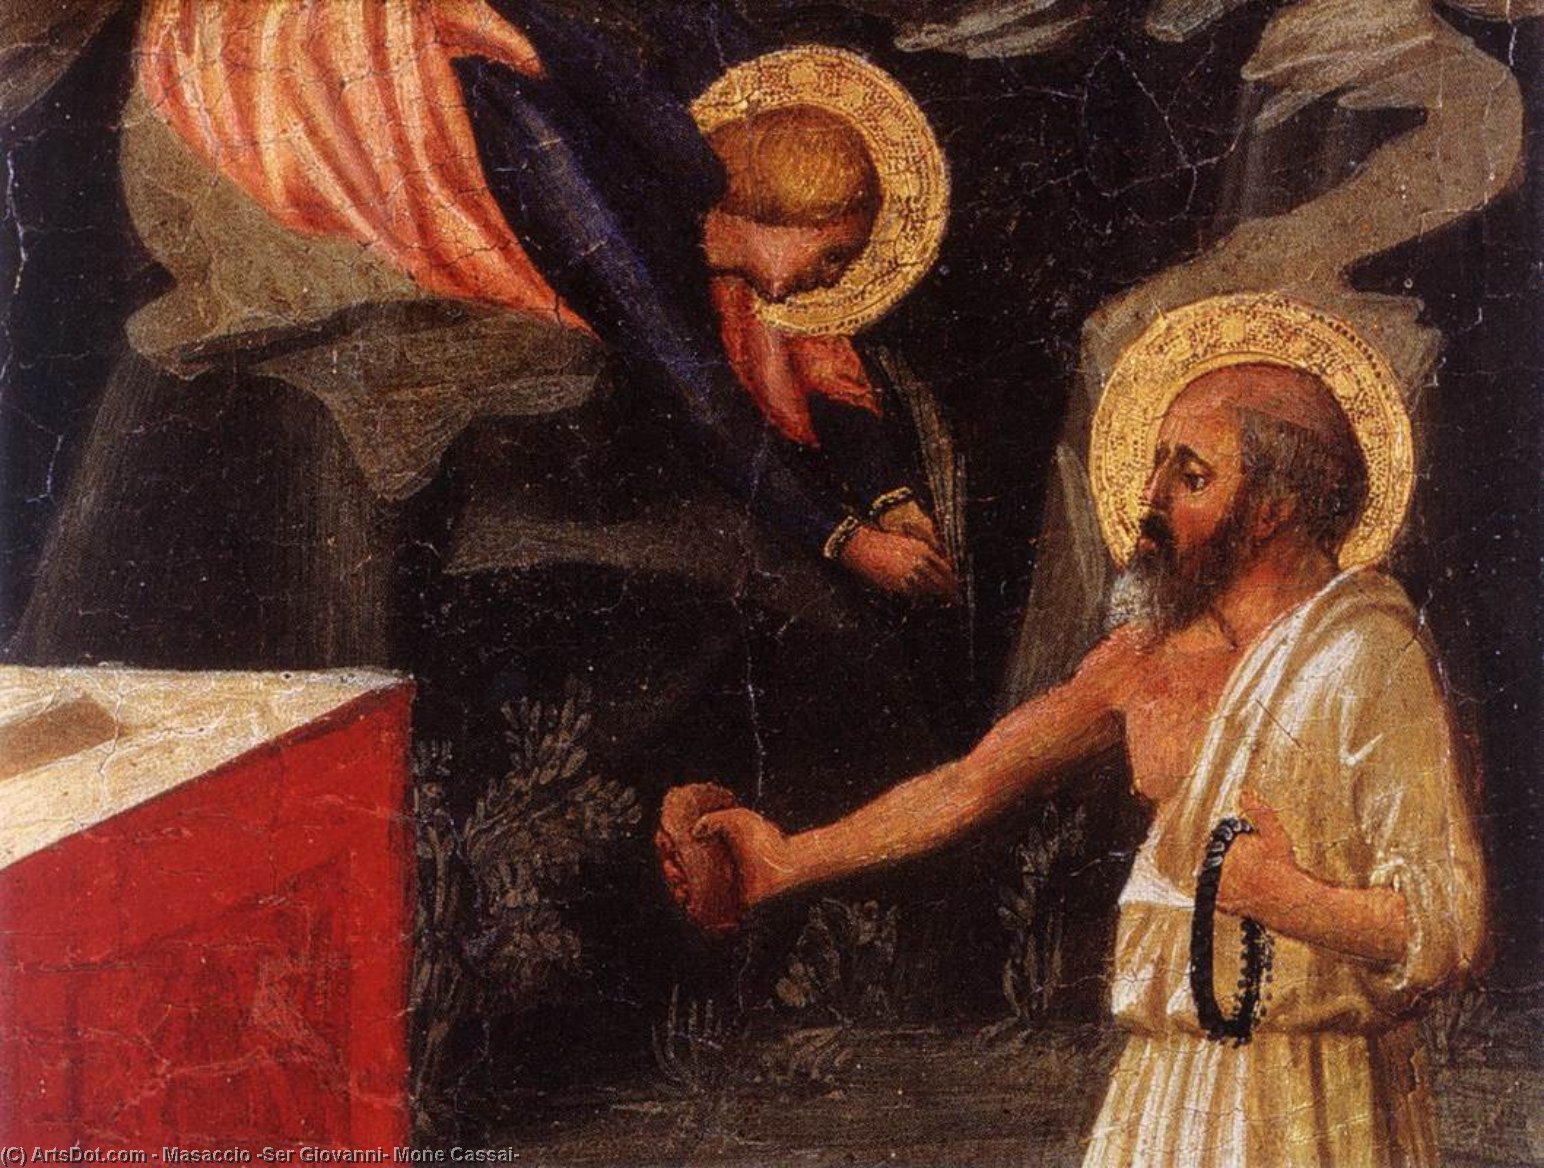 WikiOO.org - Энциклопедия изобразительного искусства - Живопись, Картины  Masaccio (Ser Giovanni, Mone Cassai) - Христос в Гефсиманском саду фрагмент